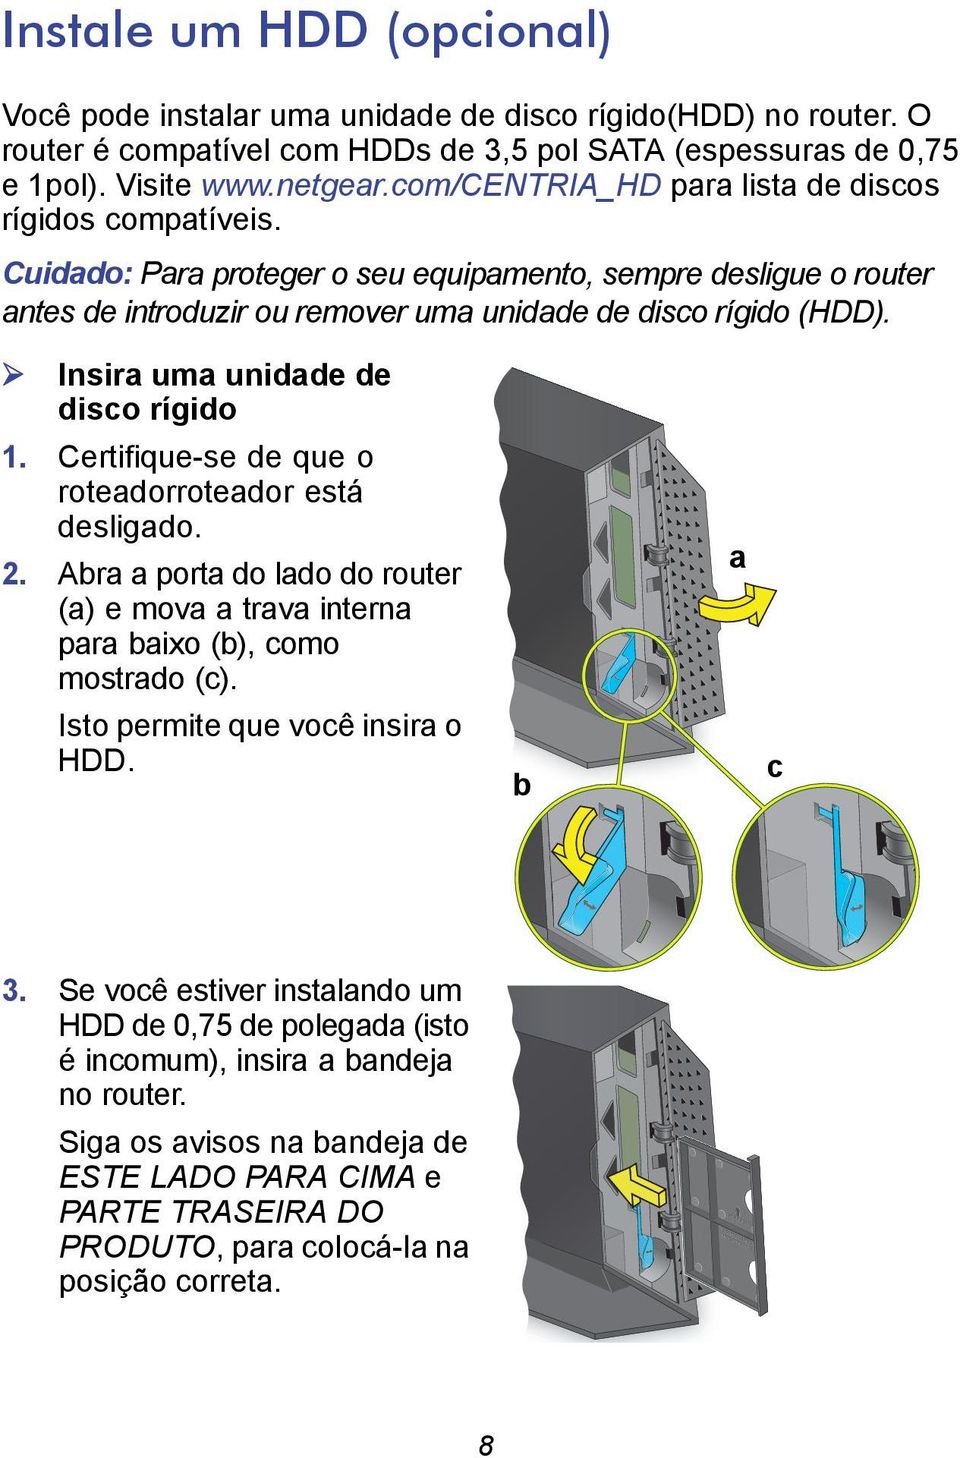 Insira uma unidade de disco rígido 1. Certifique-se de que o roteadorroteador está desligado. 2. Abra a porta do lado do router (a) e mova a trava interna para baixo (b), como mostrado (c).